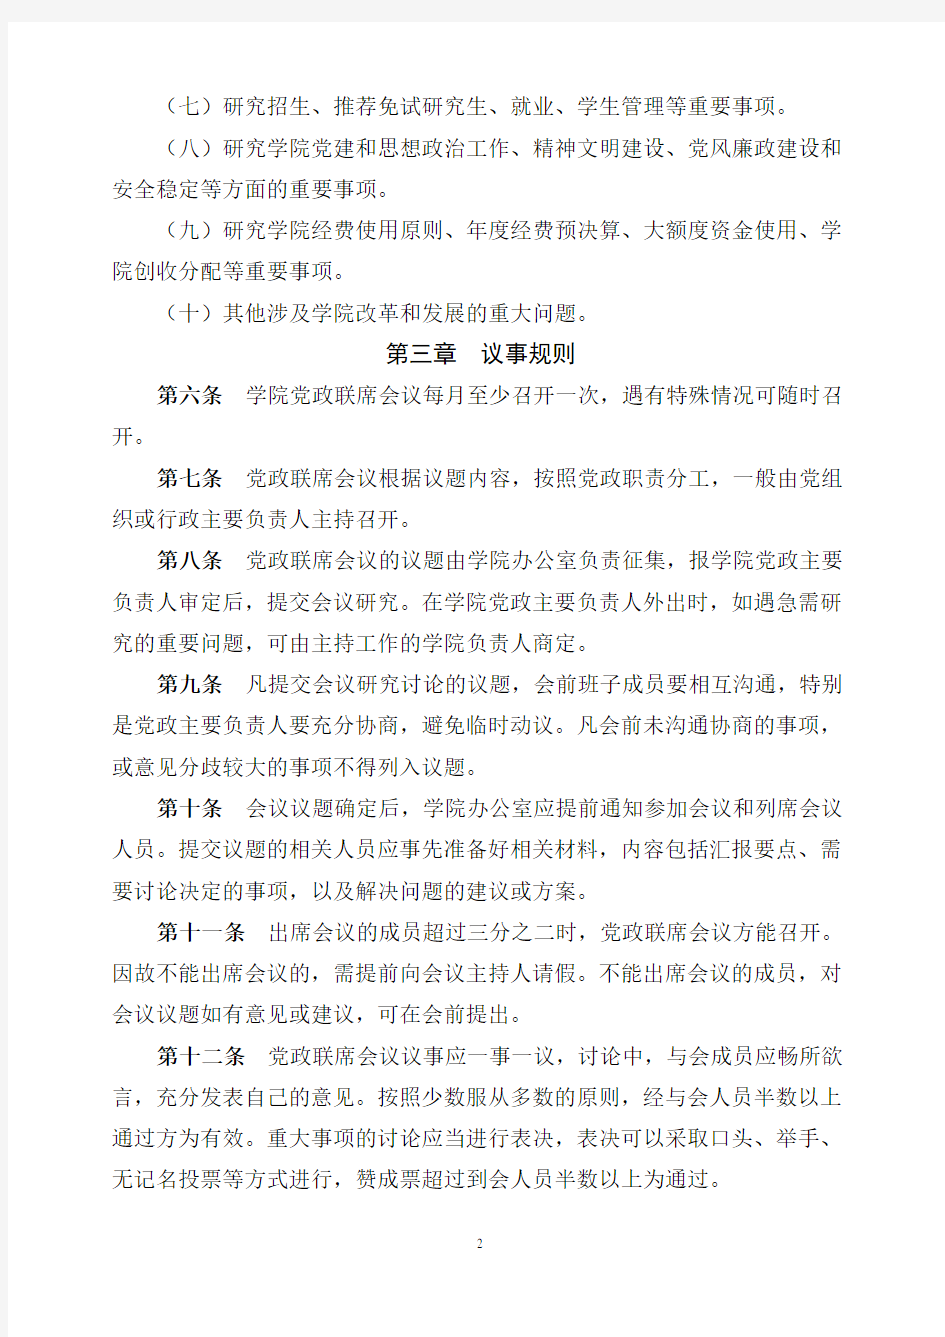 河北农业大学学院党政联席会议制度实施细则